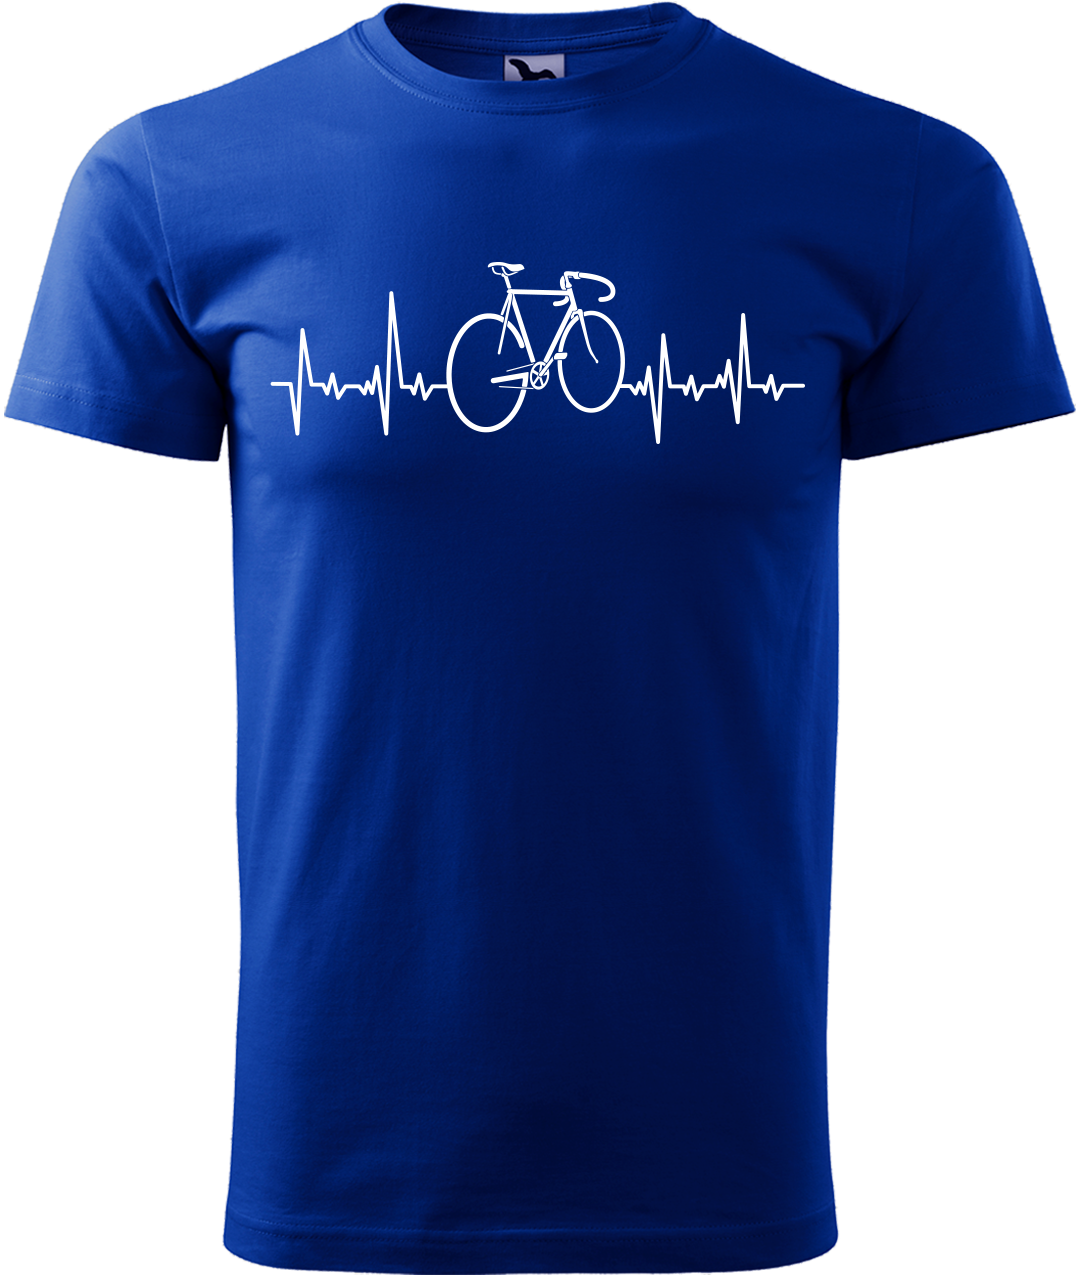 Pánské tričko s kolem - Cyklistův kardiogram Velikost: XL, Barva: Královská modrá (05)